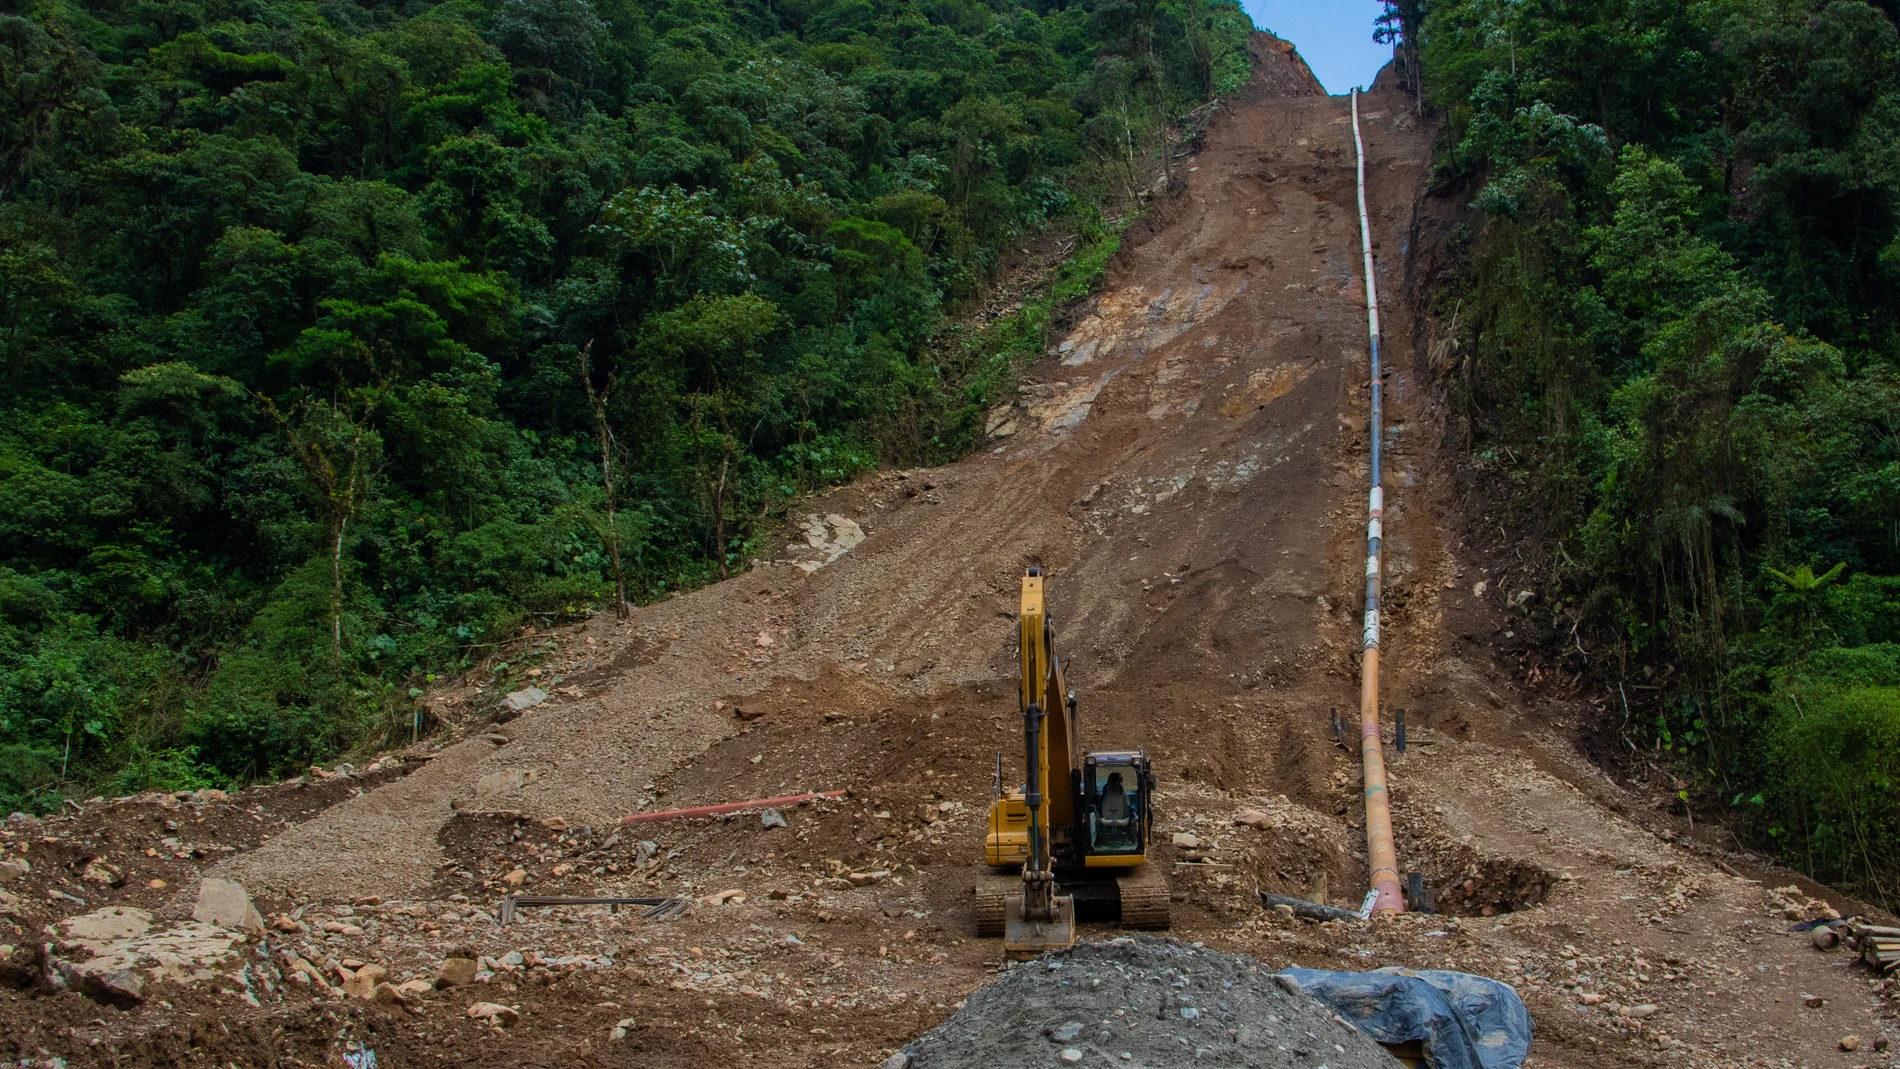 AME6876. REVENTADOR (ECUADOR), 31/12/2021.- Fotografía cedida hoy por el Ministerio de Energía de Ecuador, que muestra los trabajos para instalar la tubería del Sistema de Oleoducto Transecuatoriano (SOTE), sometido a una reconducción, en el sector del Reventador en la Amazonía, donde se registró un proceso de "erosión regresiva" por deterioro en cauces de afluentes del río Coca (Ecuador). La petrolera estatal ecuatoriana Petroecuador anunció este viernes la reanudación del transporte de crudo por el Sistema de Oleoducto Transecuatoriano (SOTE), sometido a una reconducción de la tubería en un sector de la Amazonía donde se registró un proceso de "erosión regresiva" en un río. EFE/Ministerio de Energía de Ecuador /SOLO USO EDITORIAL /SOLO DISPONIBLE PARA ILUSTRAR LA NOTICIA QUE ACOMPAÑA (CRÉDITO OBLIGATORIO)